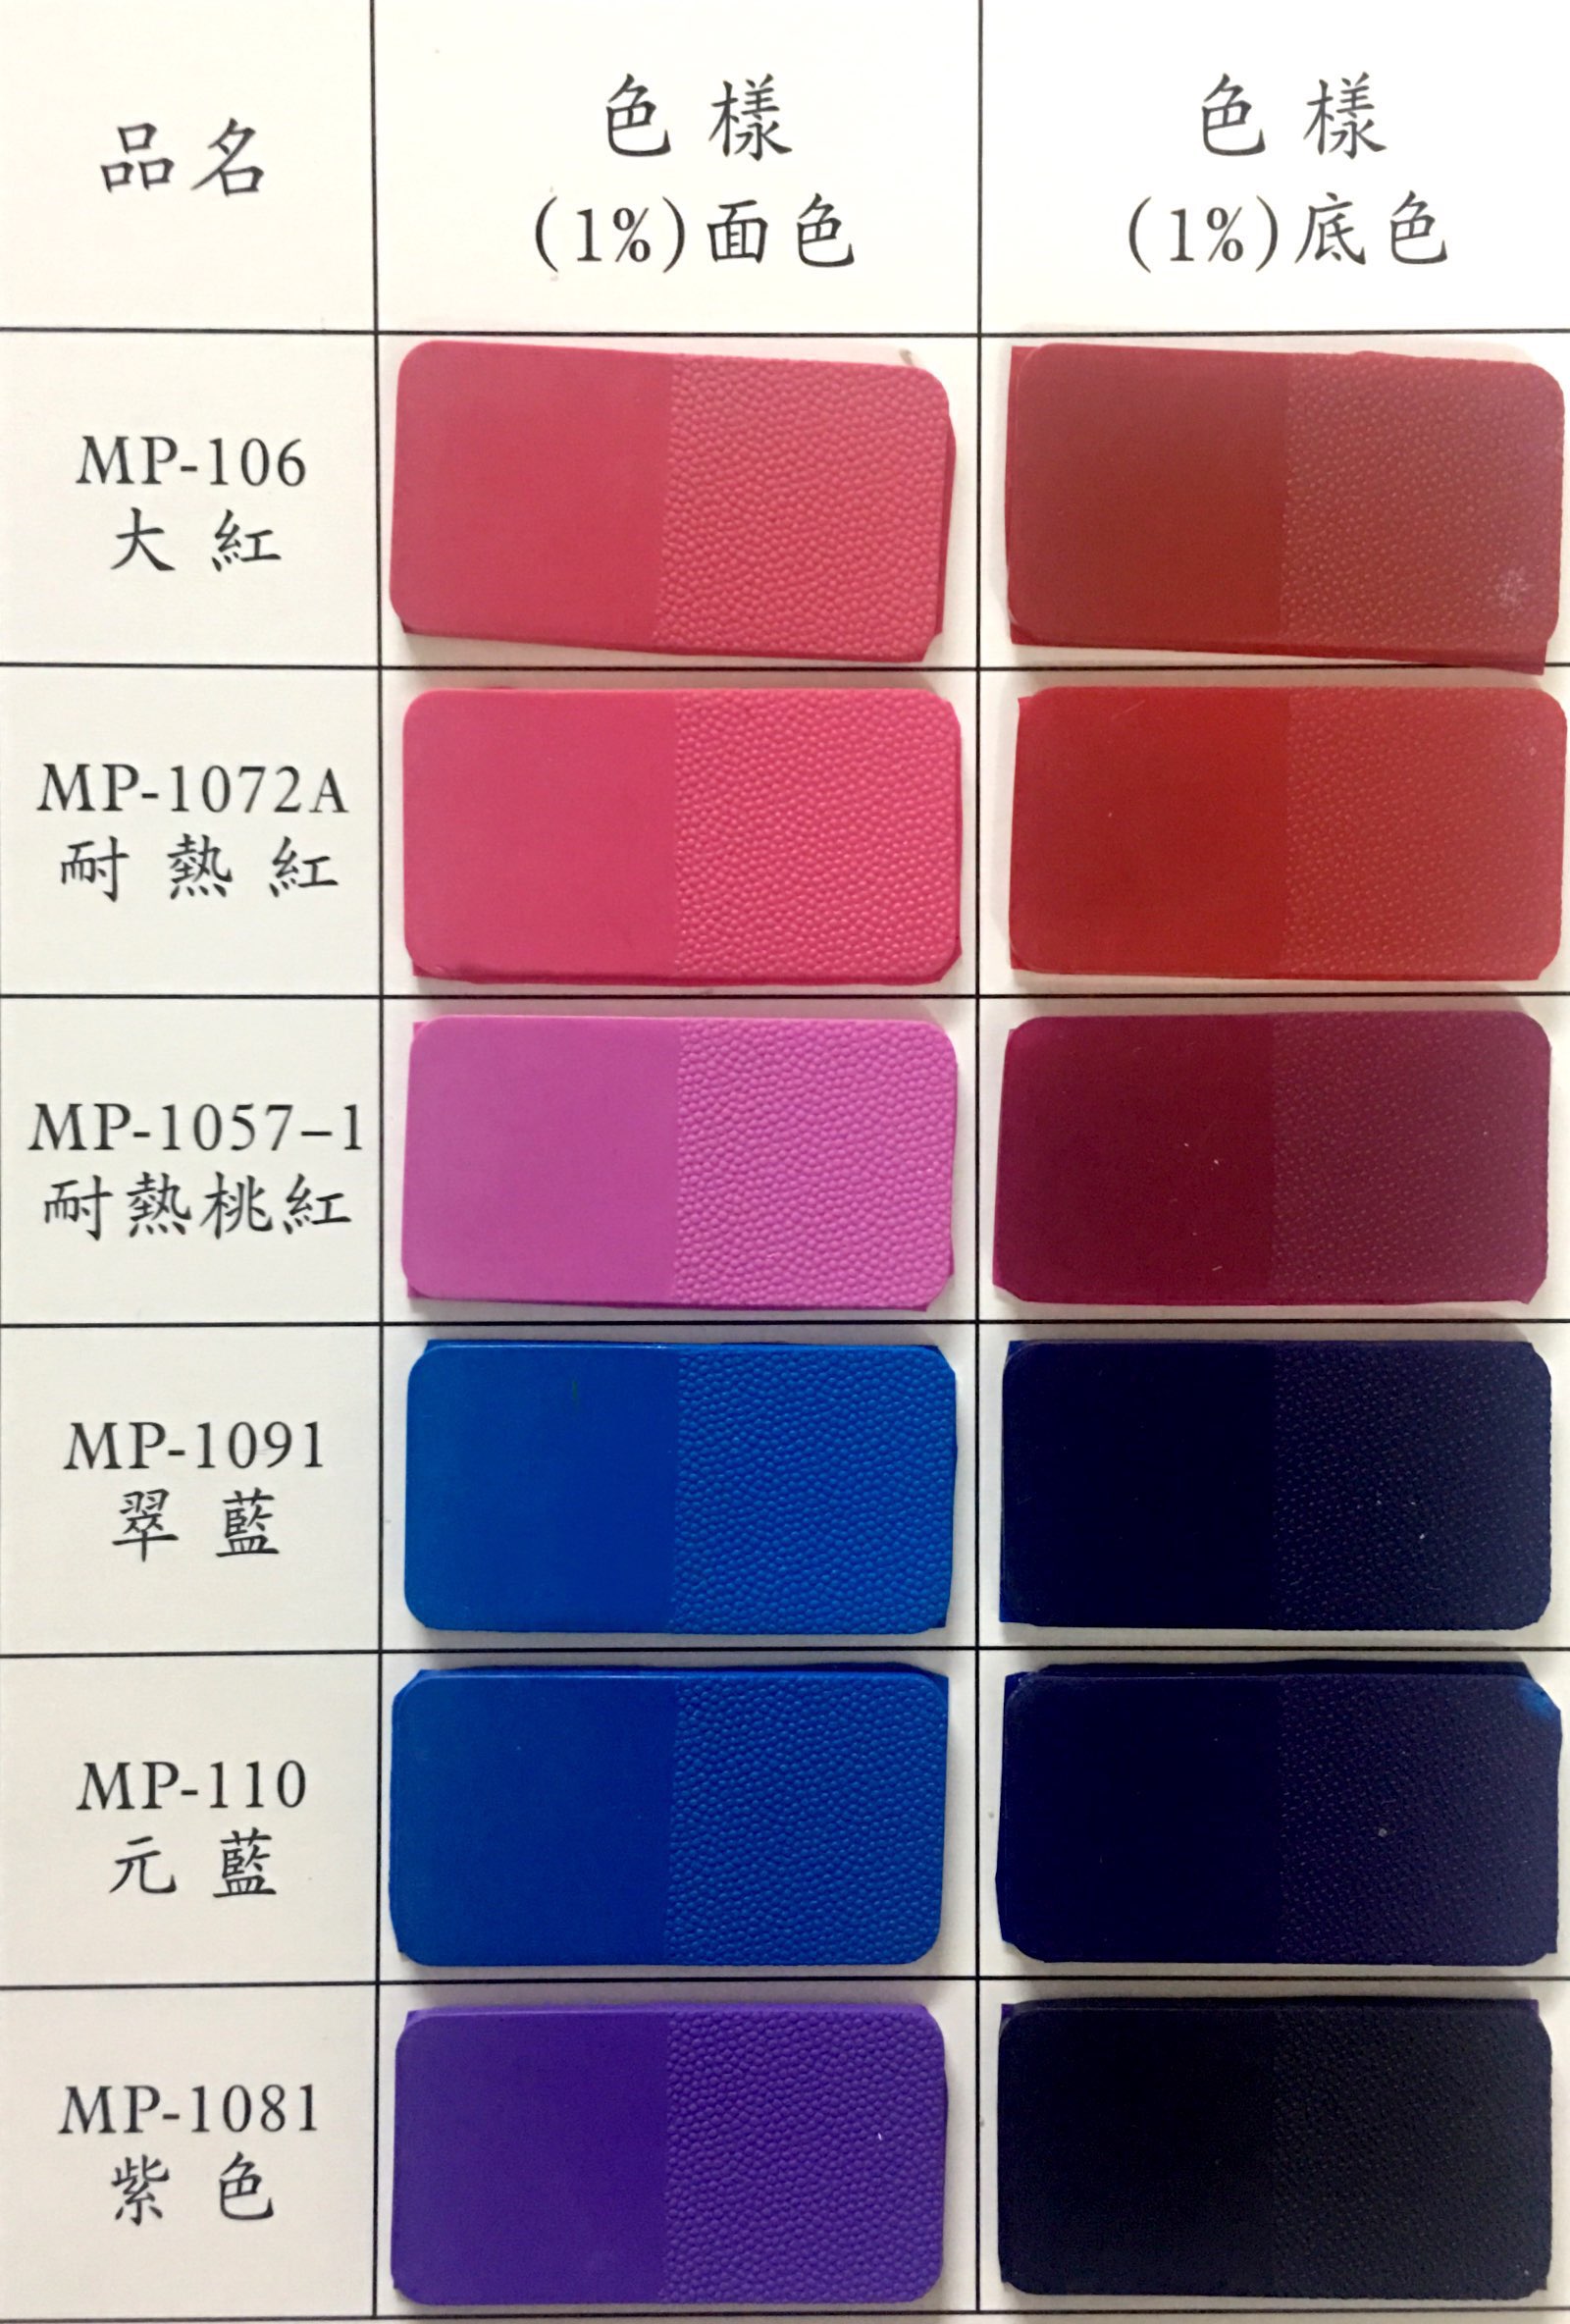 环保橡胶专用色母 橡胶着色剂 够鲜艳 耐移色 环保橡胶专用色母 橡胶硅胶专用